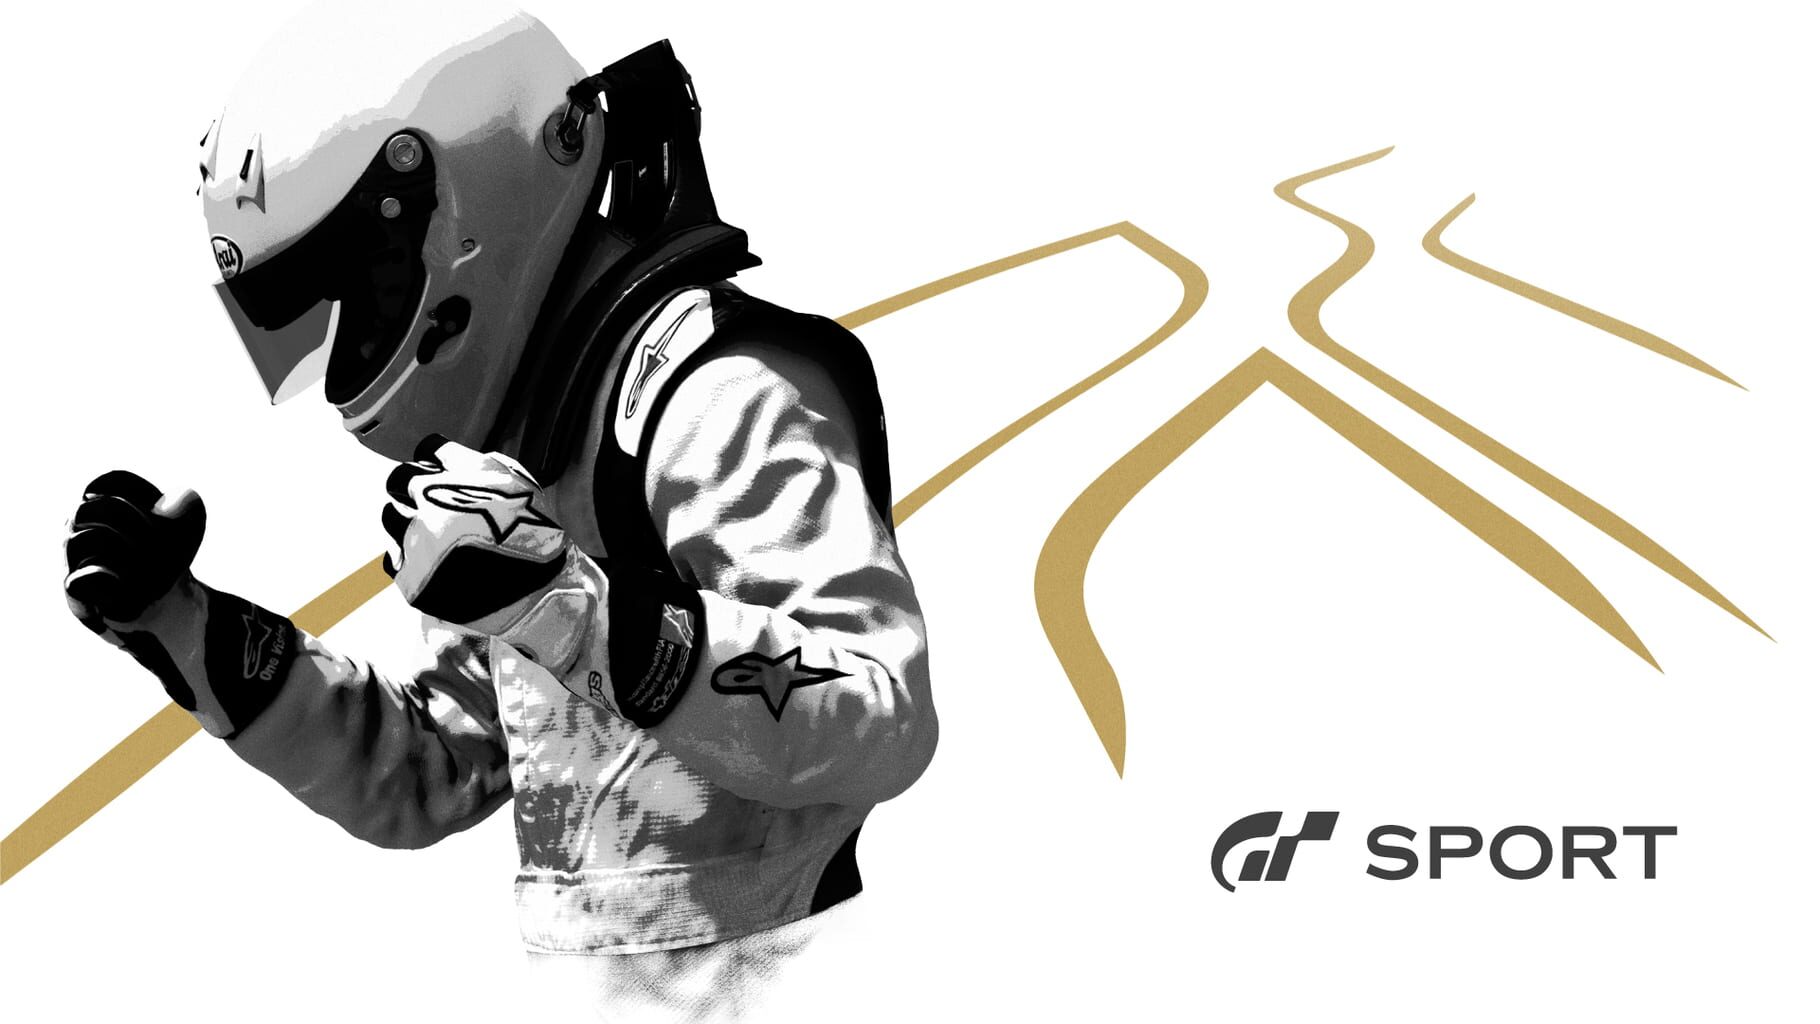 Artwork for Gran Turismo Sport